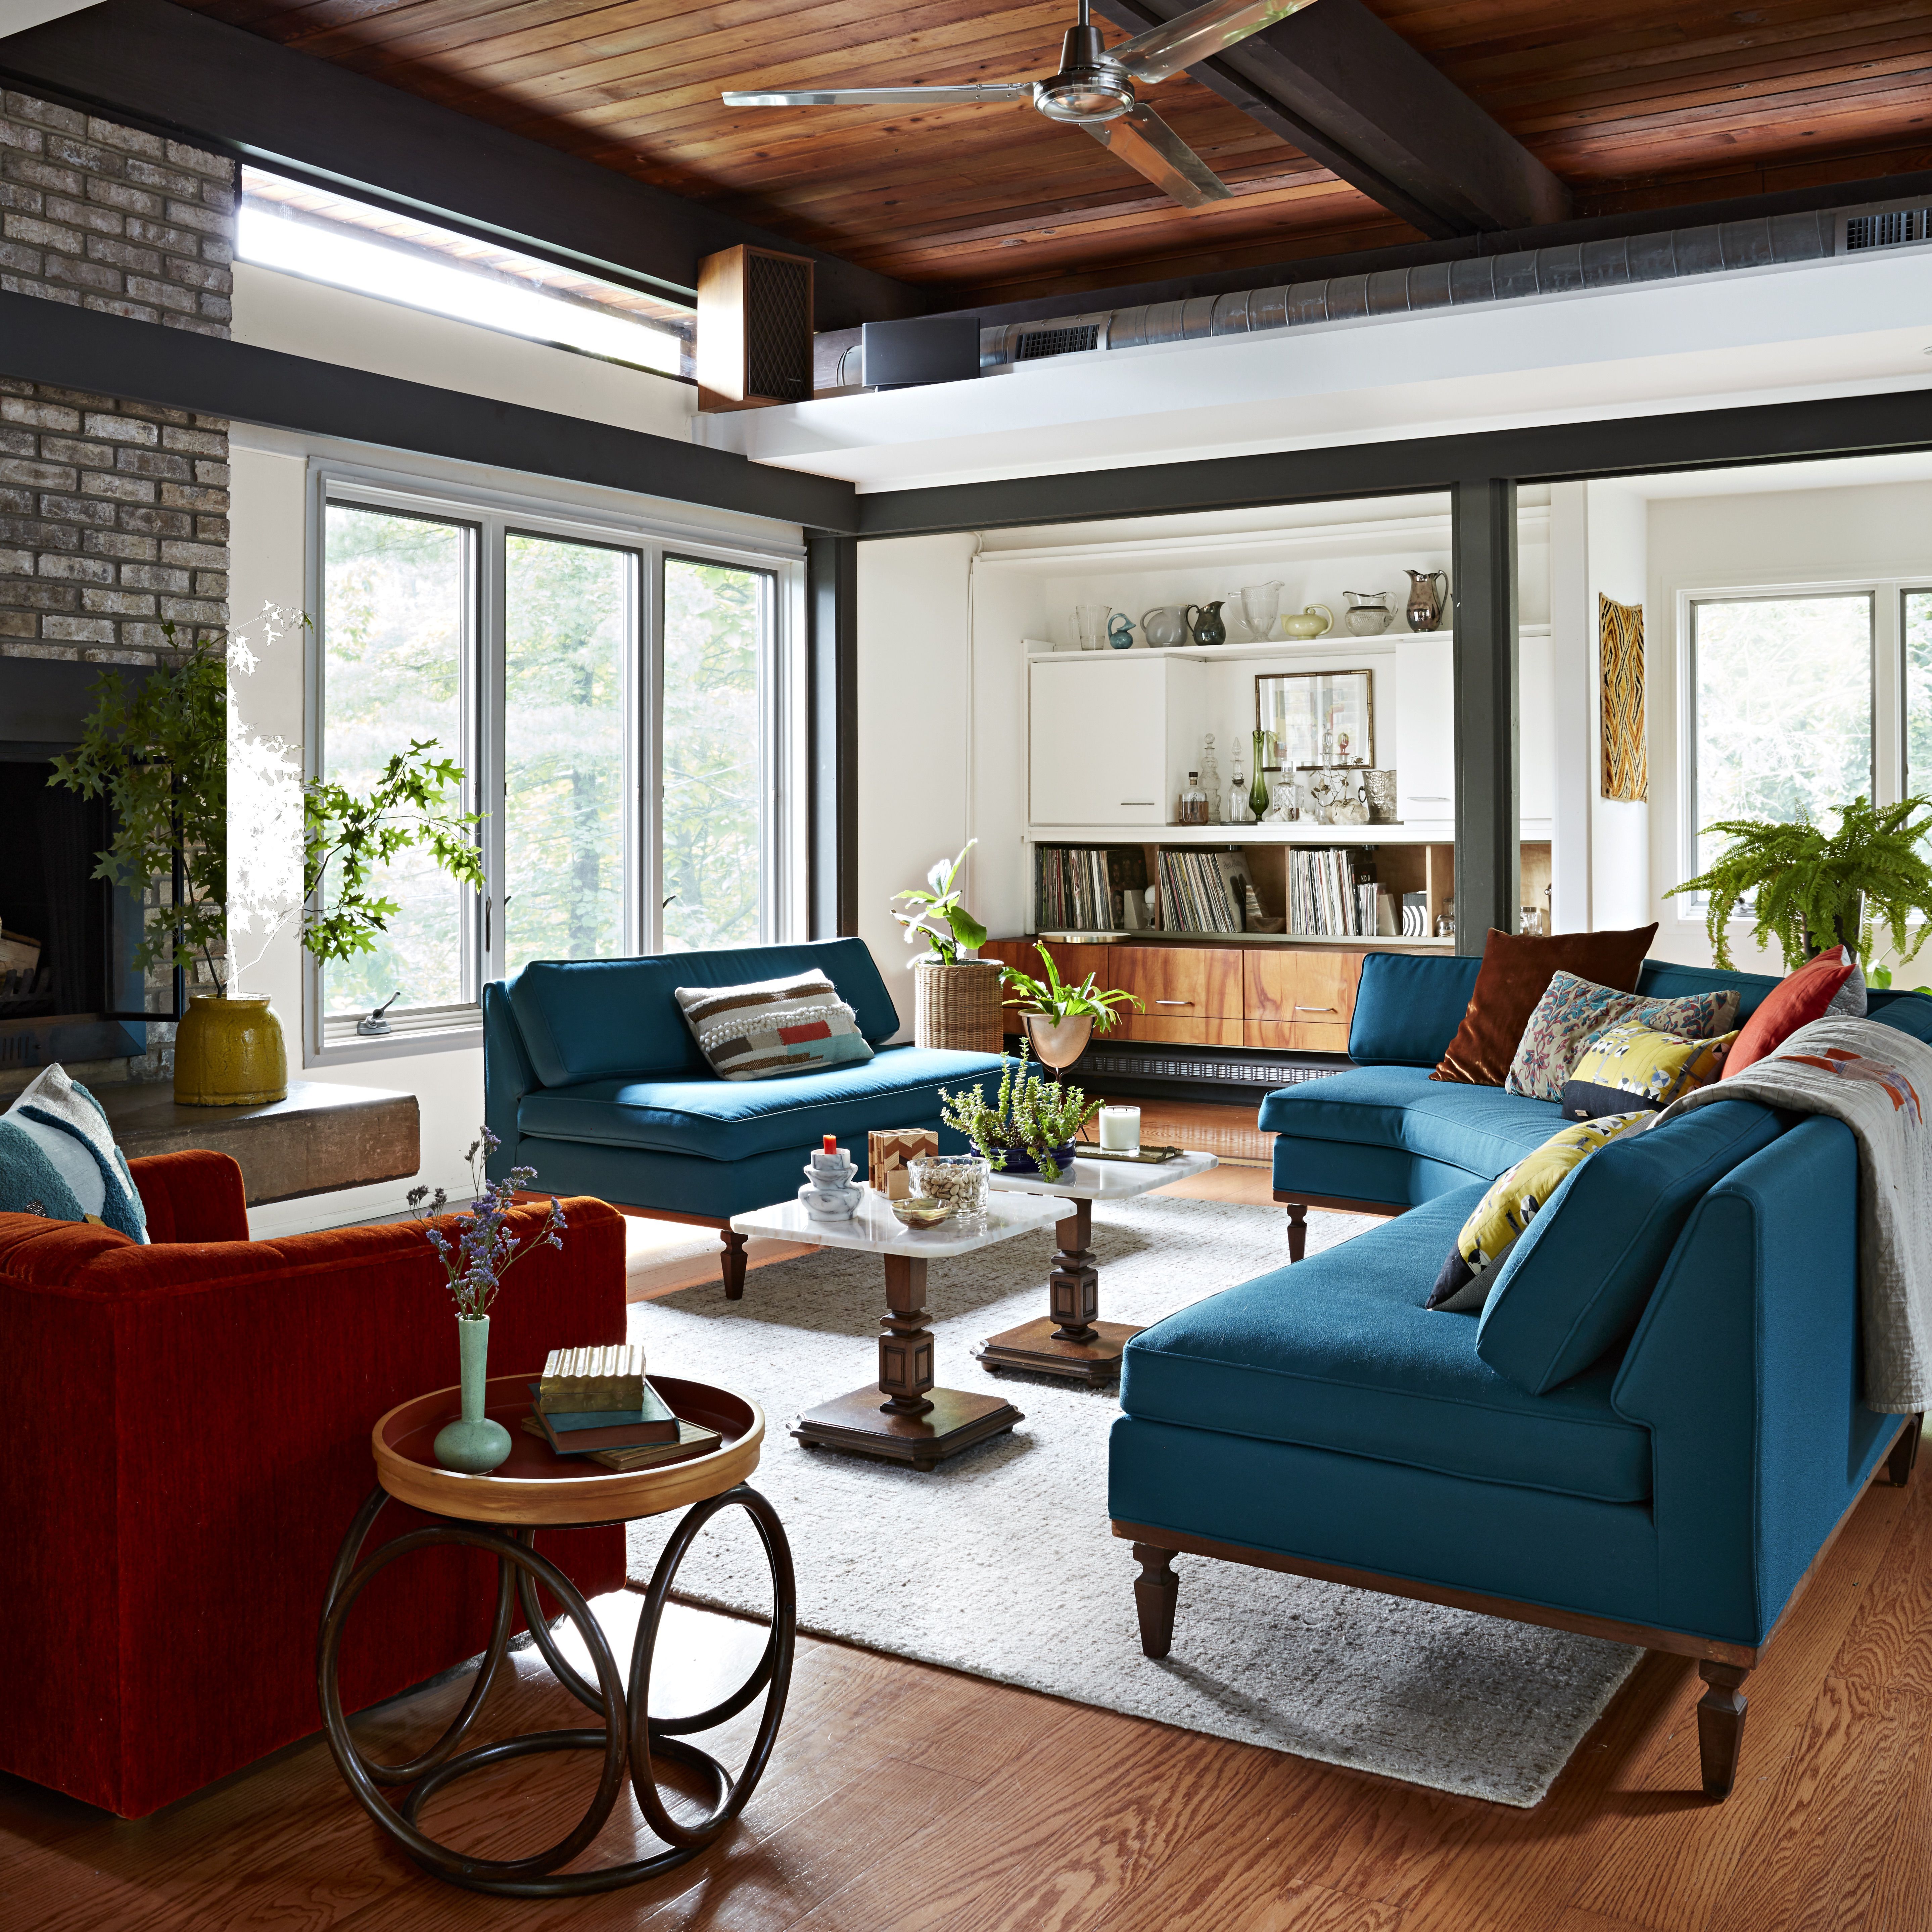 BHG Adoff House Story: soggiorno moderno della metà del secolo con camino in pietra e divani e sedie color arancio bruciato e verde acqua